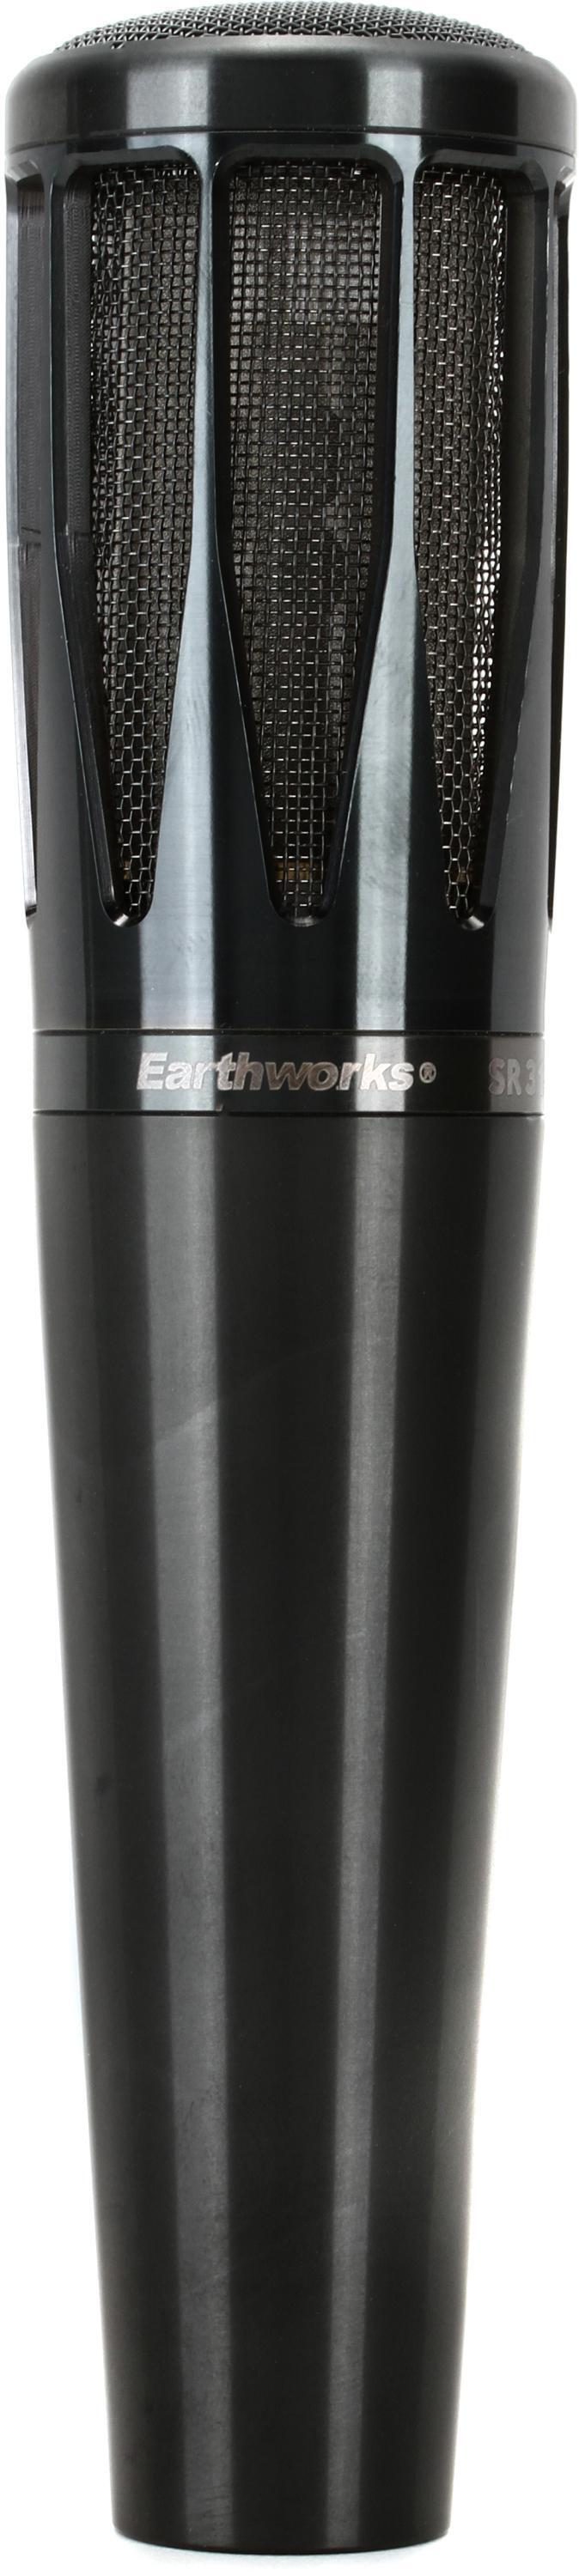 Bundled Item: Earthworks SR314 Cardioid Condenser Handheld Vocal Microphone - Black